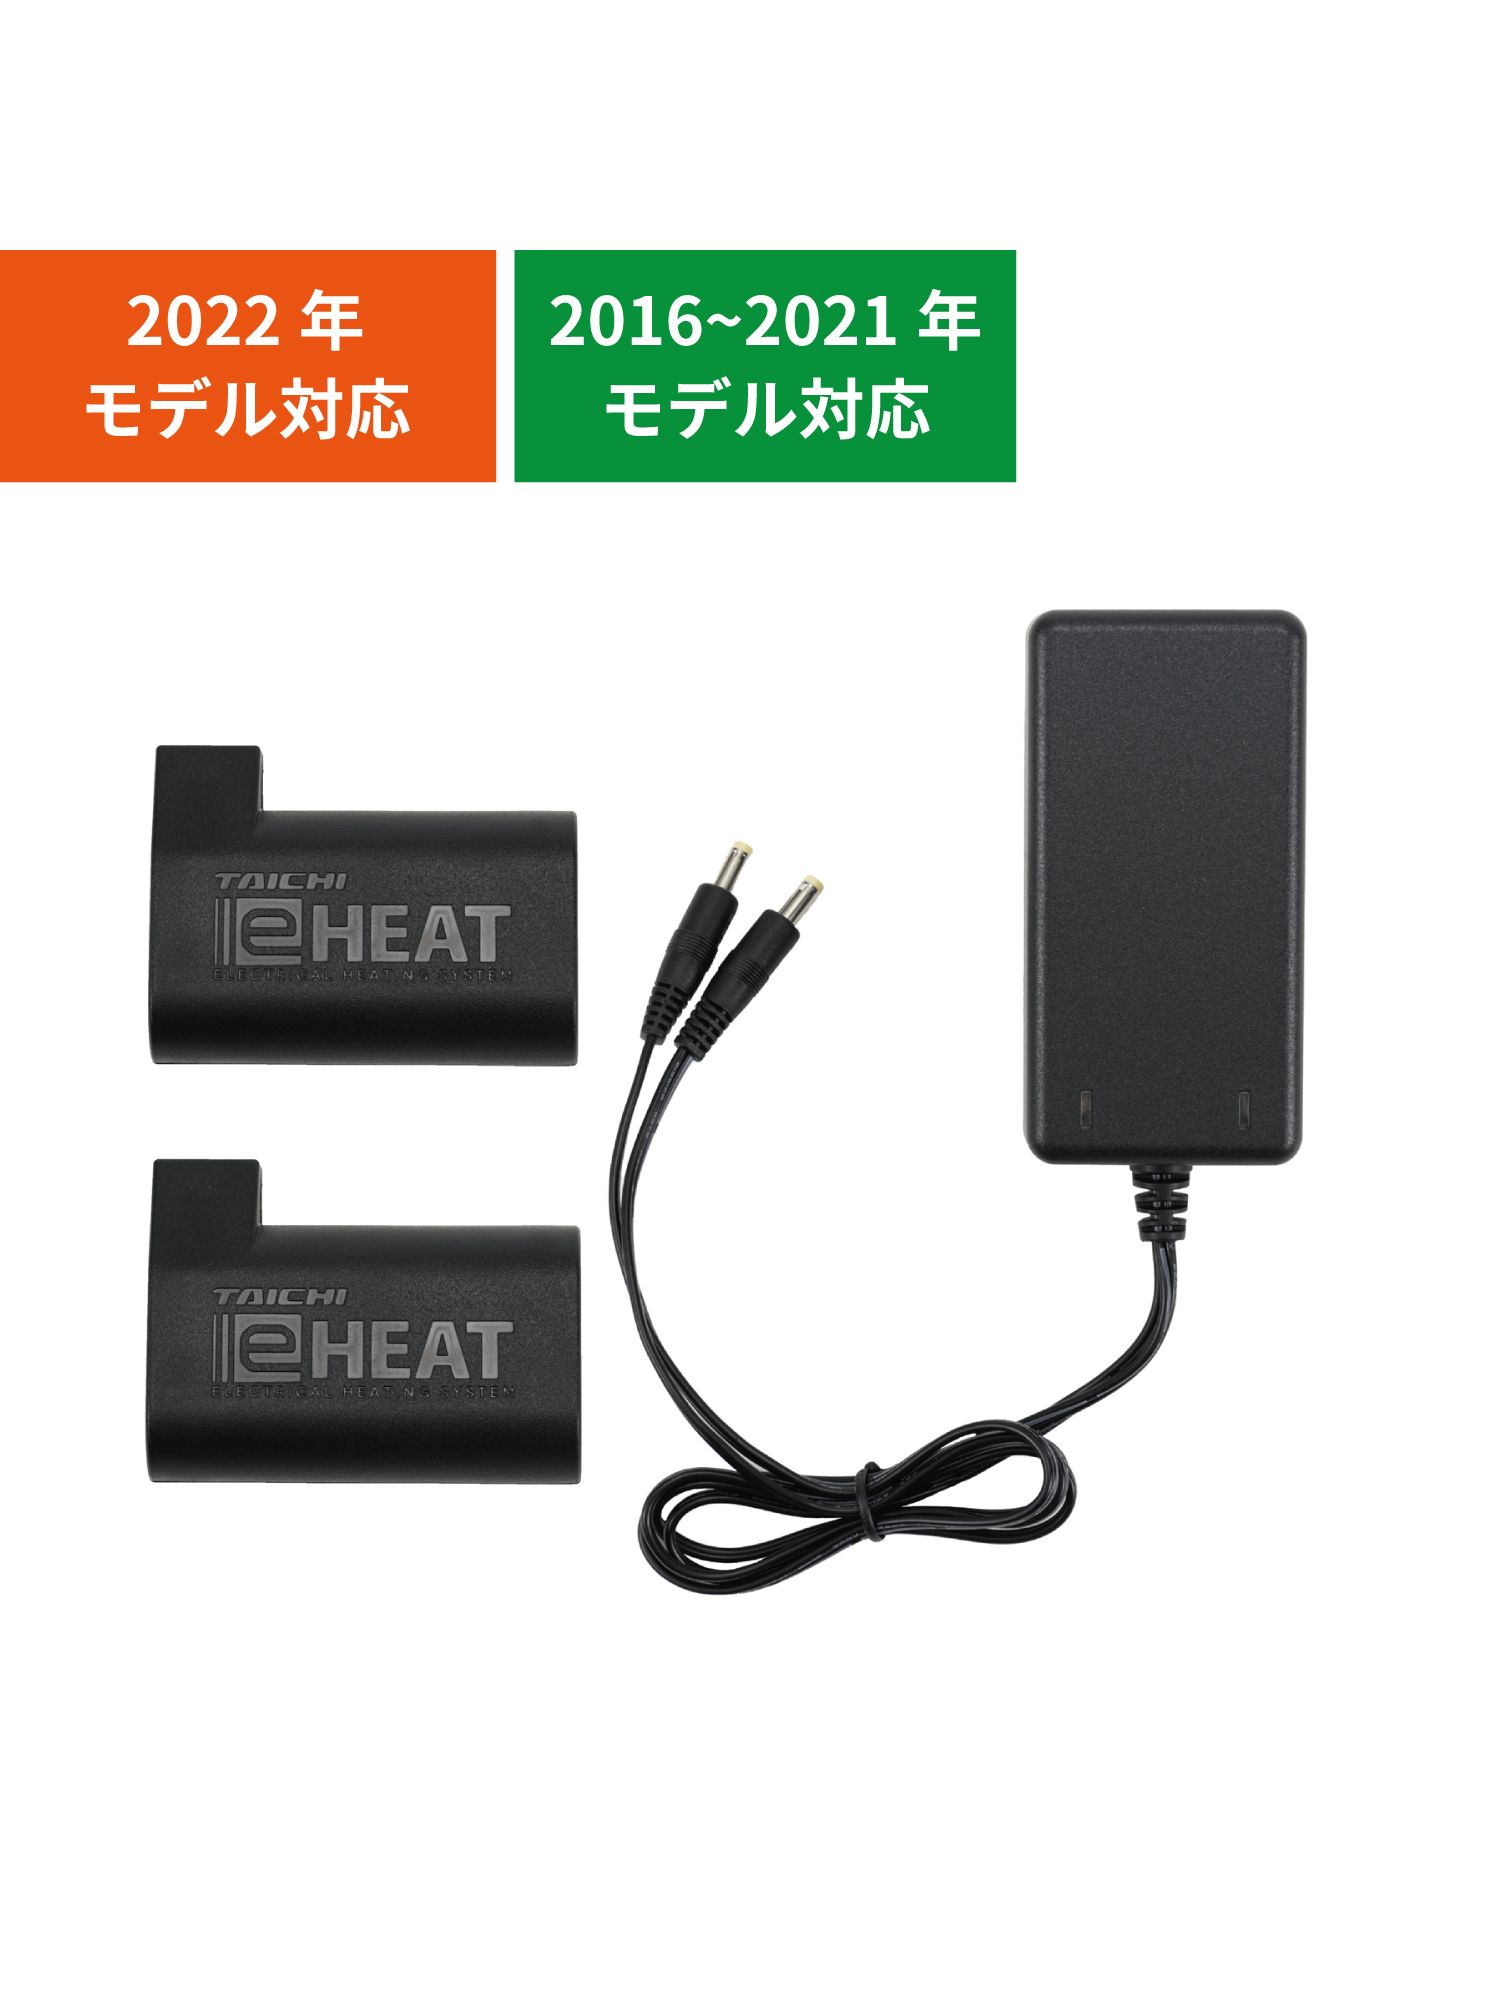 タイチ公式通販RSP064  e-HEAT 7.2V充電器バッテリーセット  TAICHI